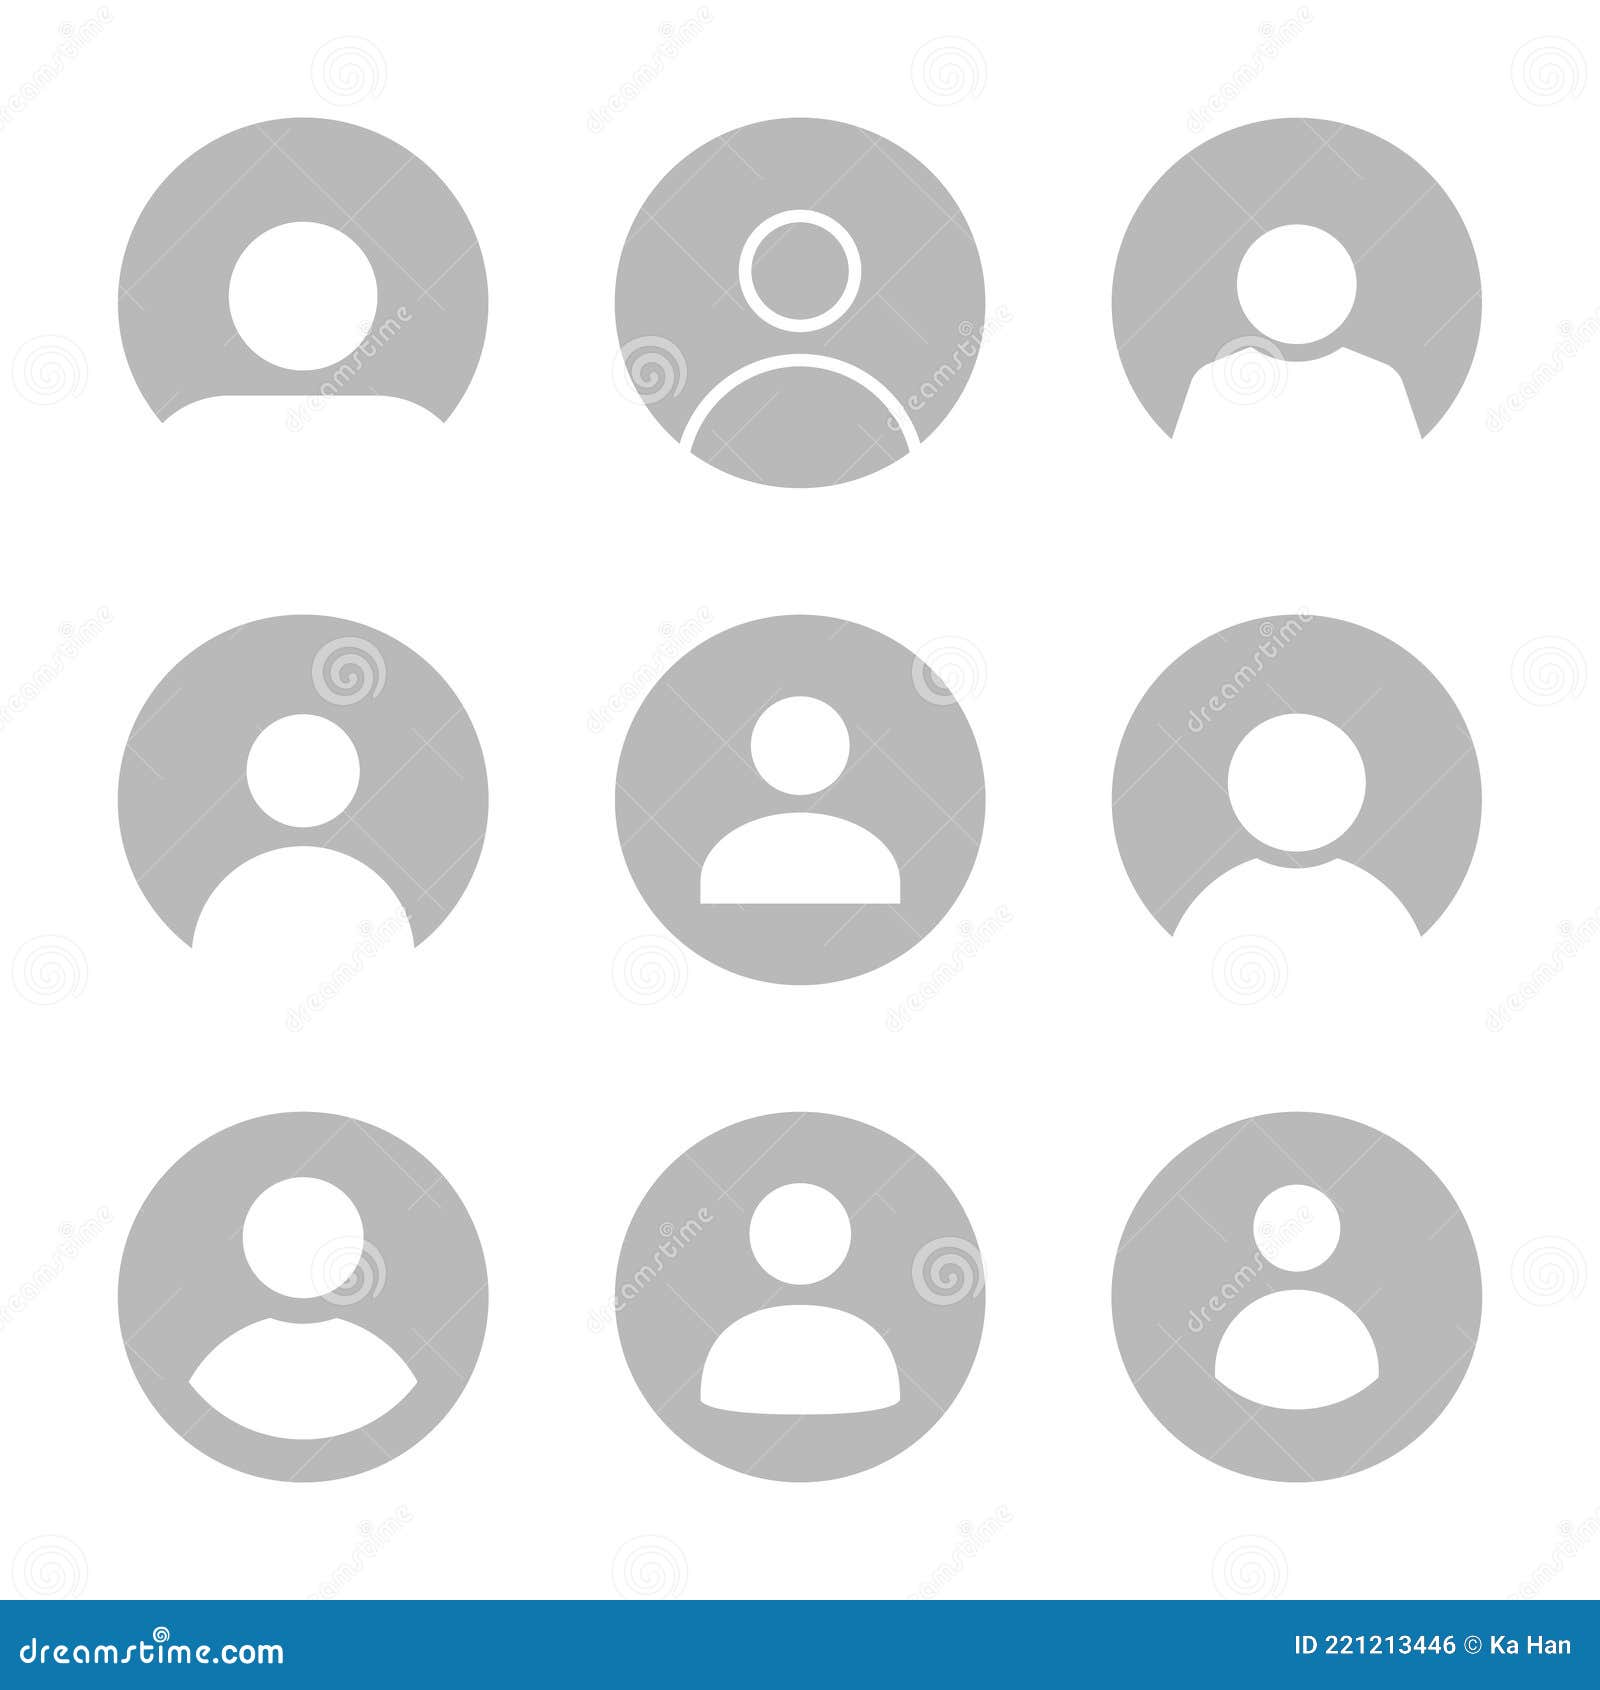 Bộ sưu tập icon avatar hồ sơ mặc định được tổng hợp đầy đủ và đa dạng, đáp ứng mọi nhu cầu của người dùng mạng xã hội. Xem ngay để tìm mẫu phù hợp!